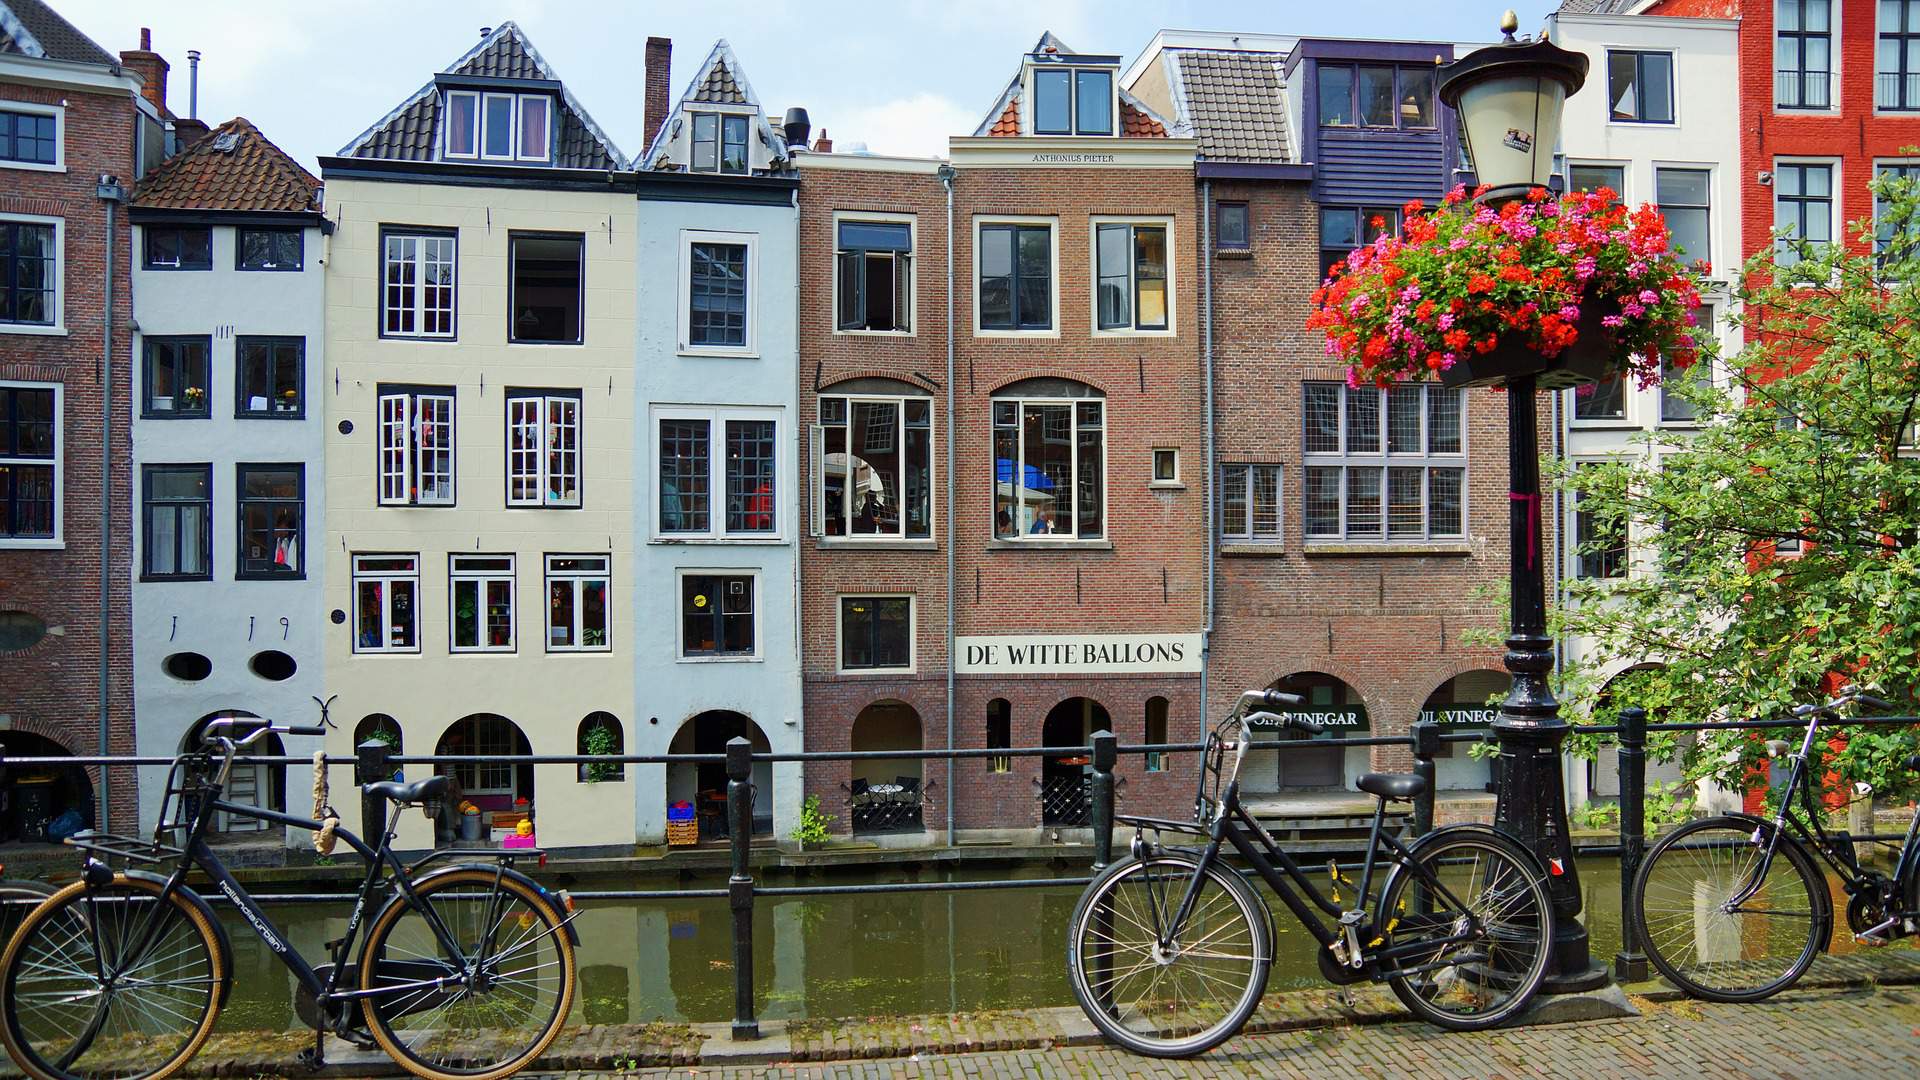 Busreis fietsvakantie vierprovinciënroute Utrecht ©Jann Weidemann from Pixabay